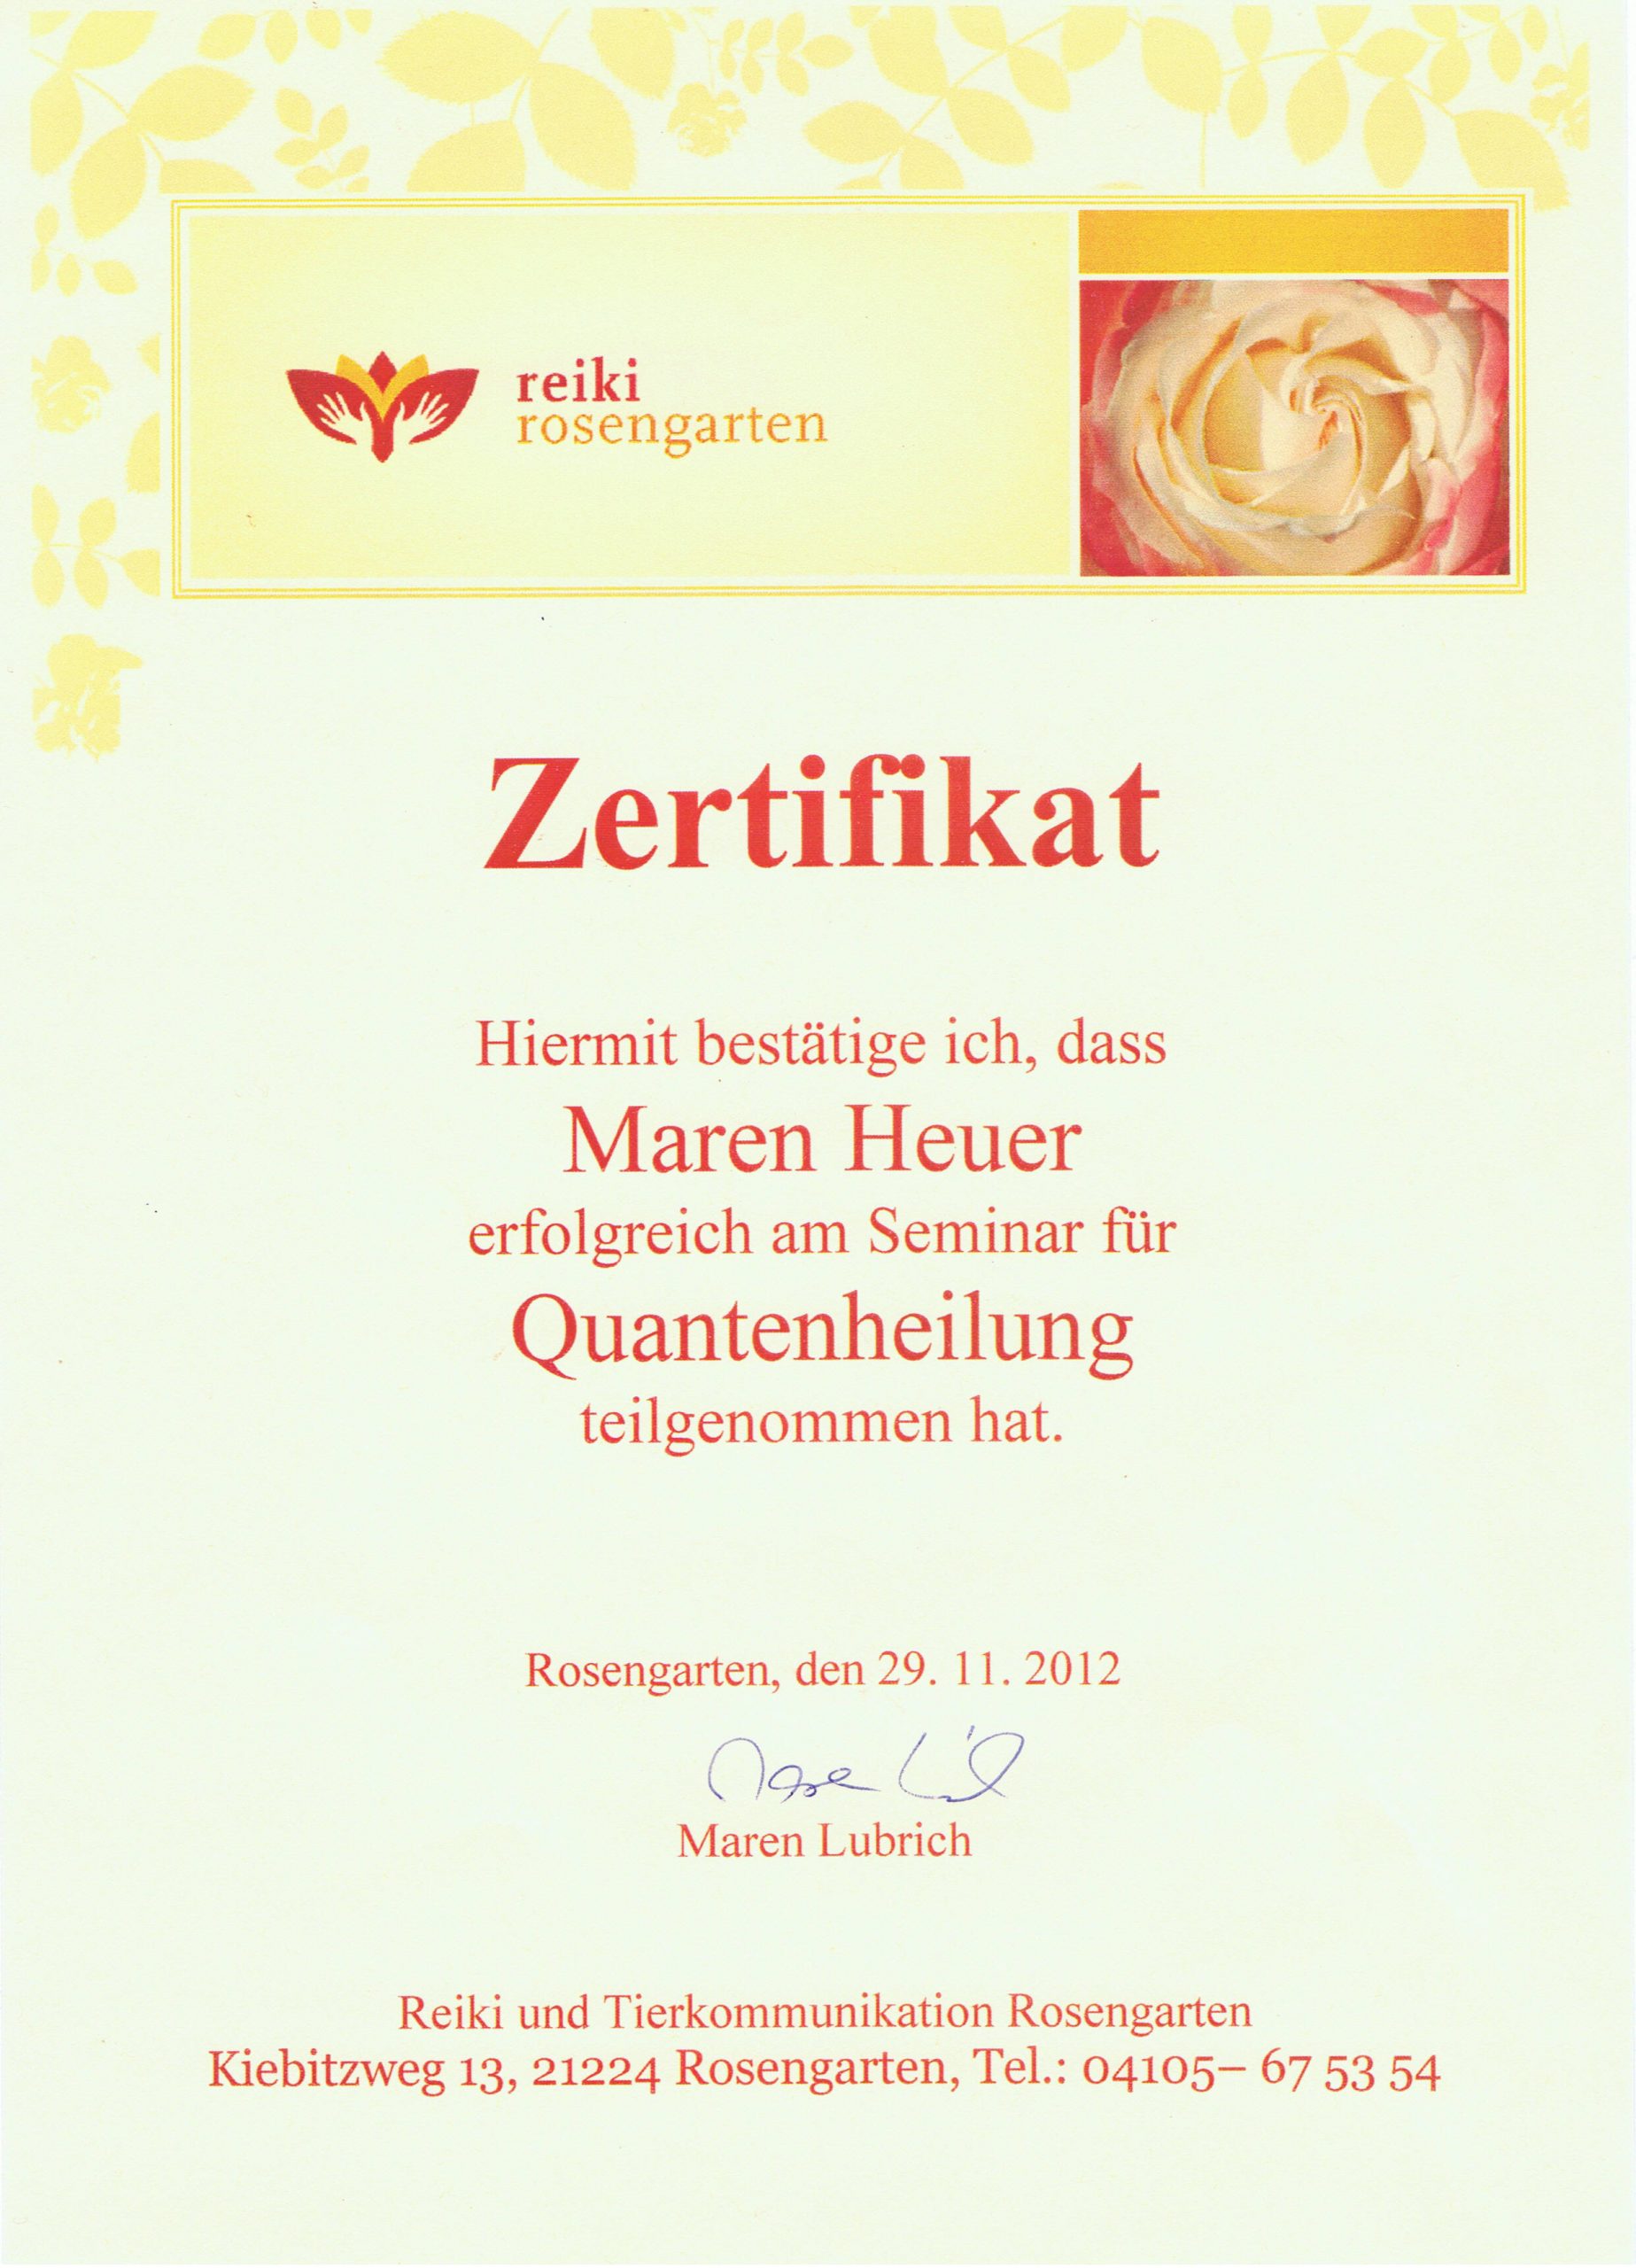 Maren Heuer, Quantenheilung, Matrix, Coaching, Live Beratung am Telefon, Gratisgespräch